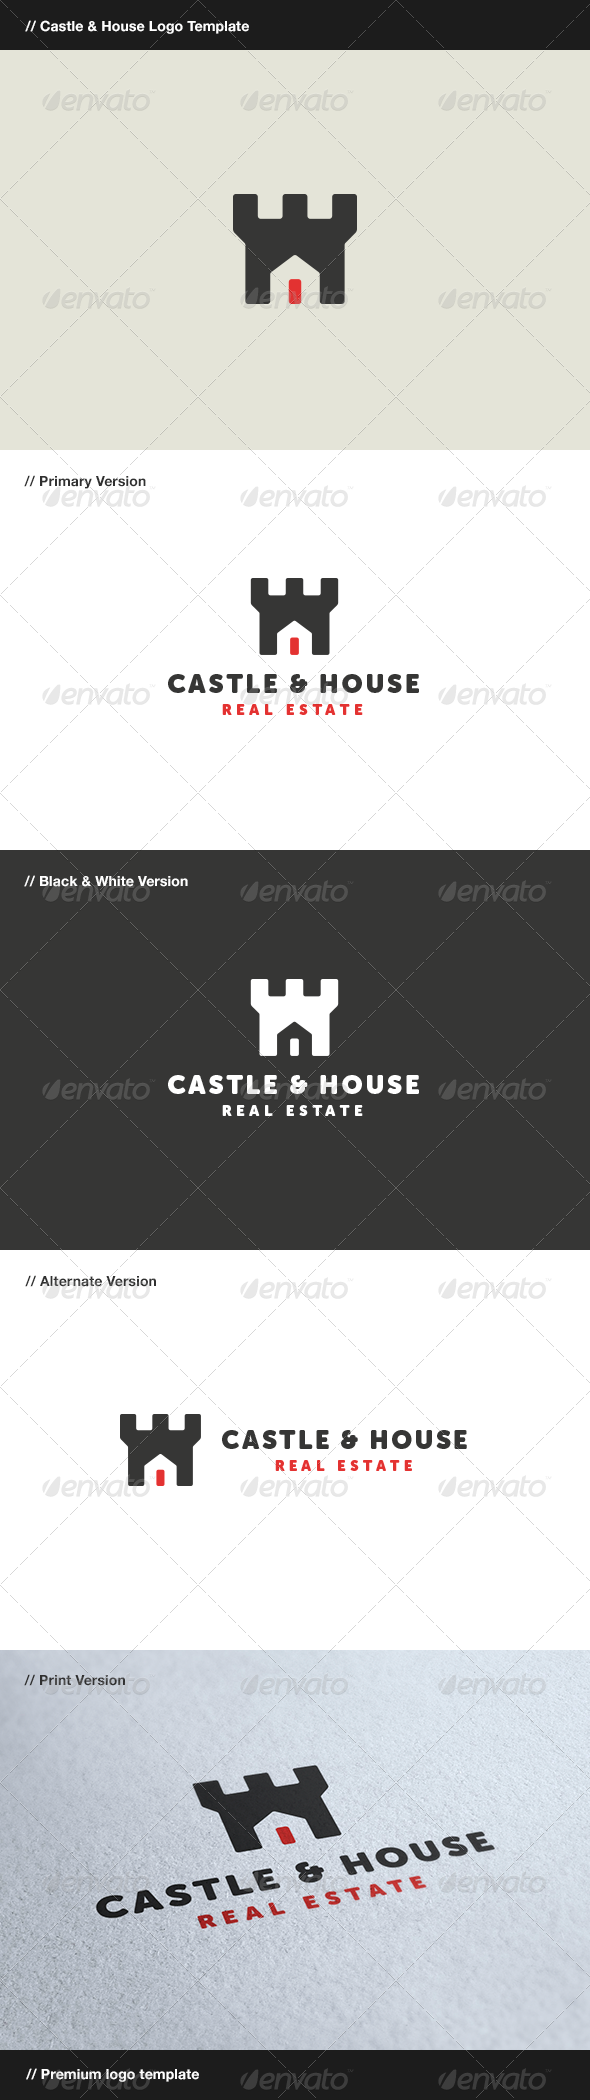 Castle & House